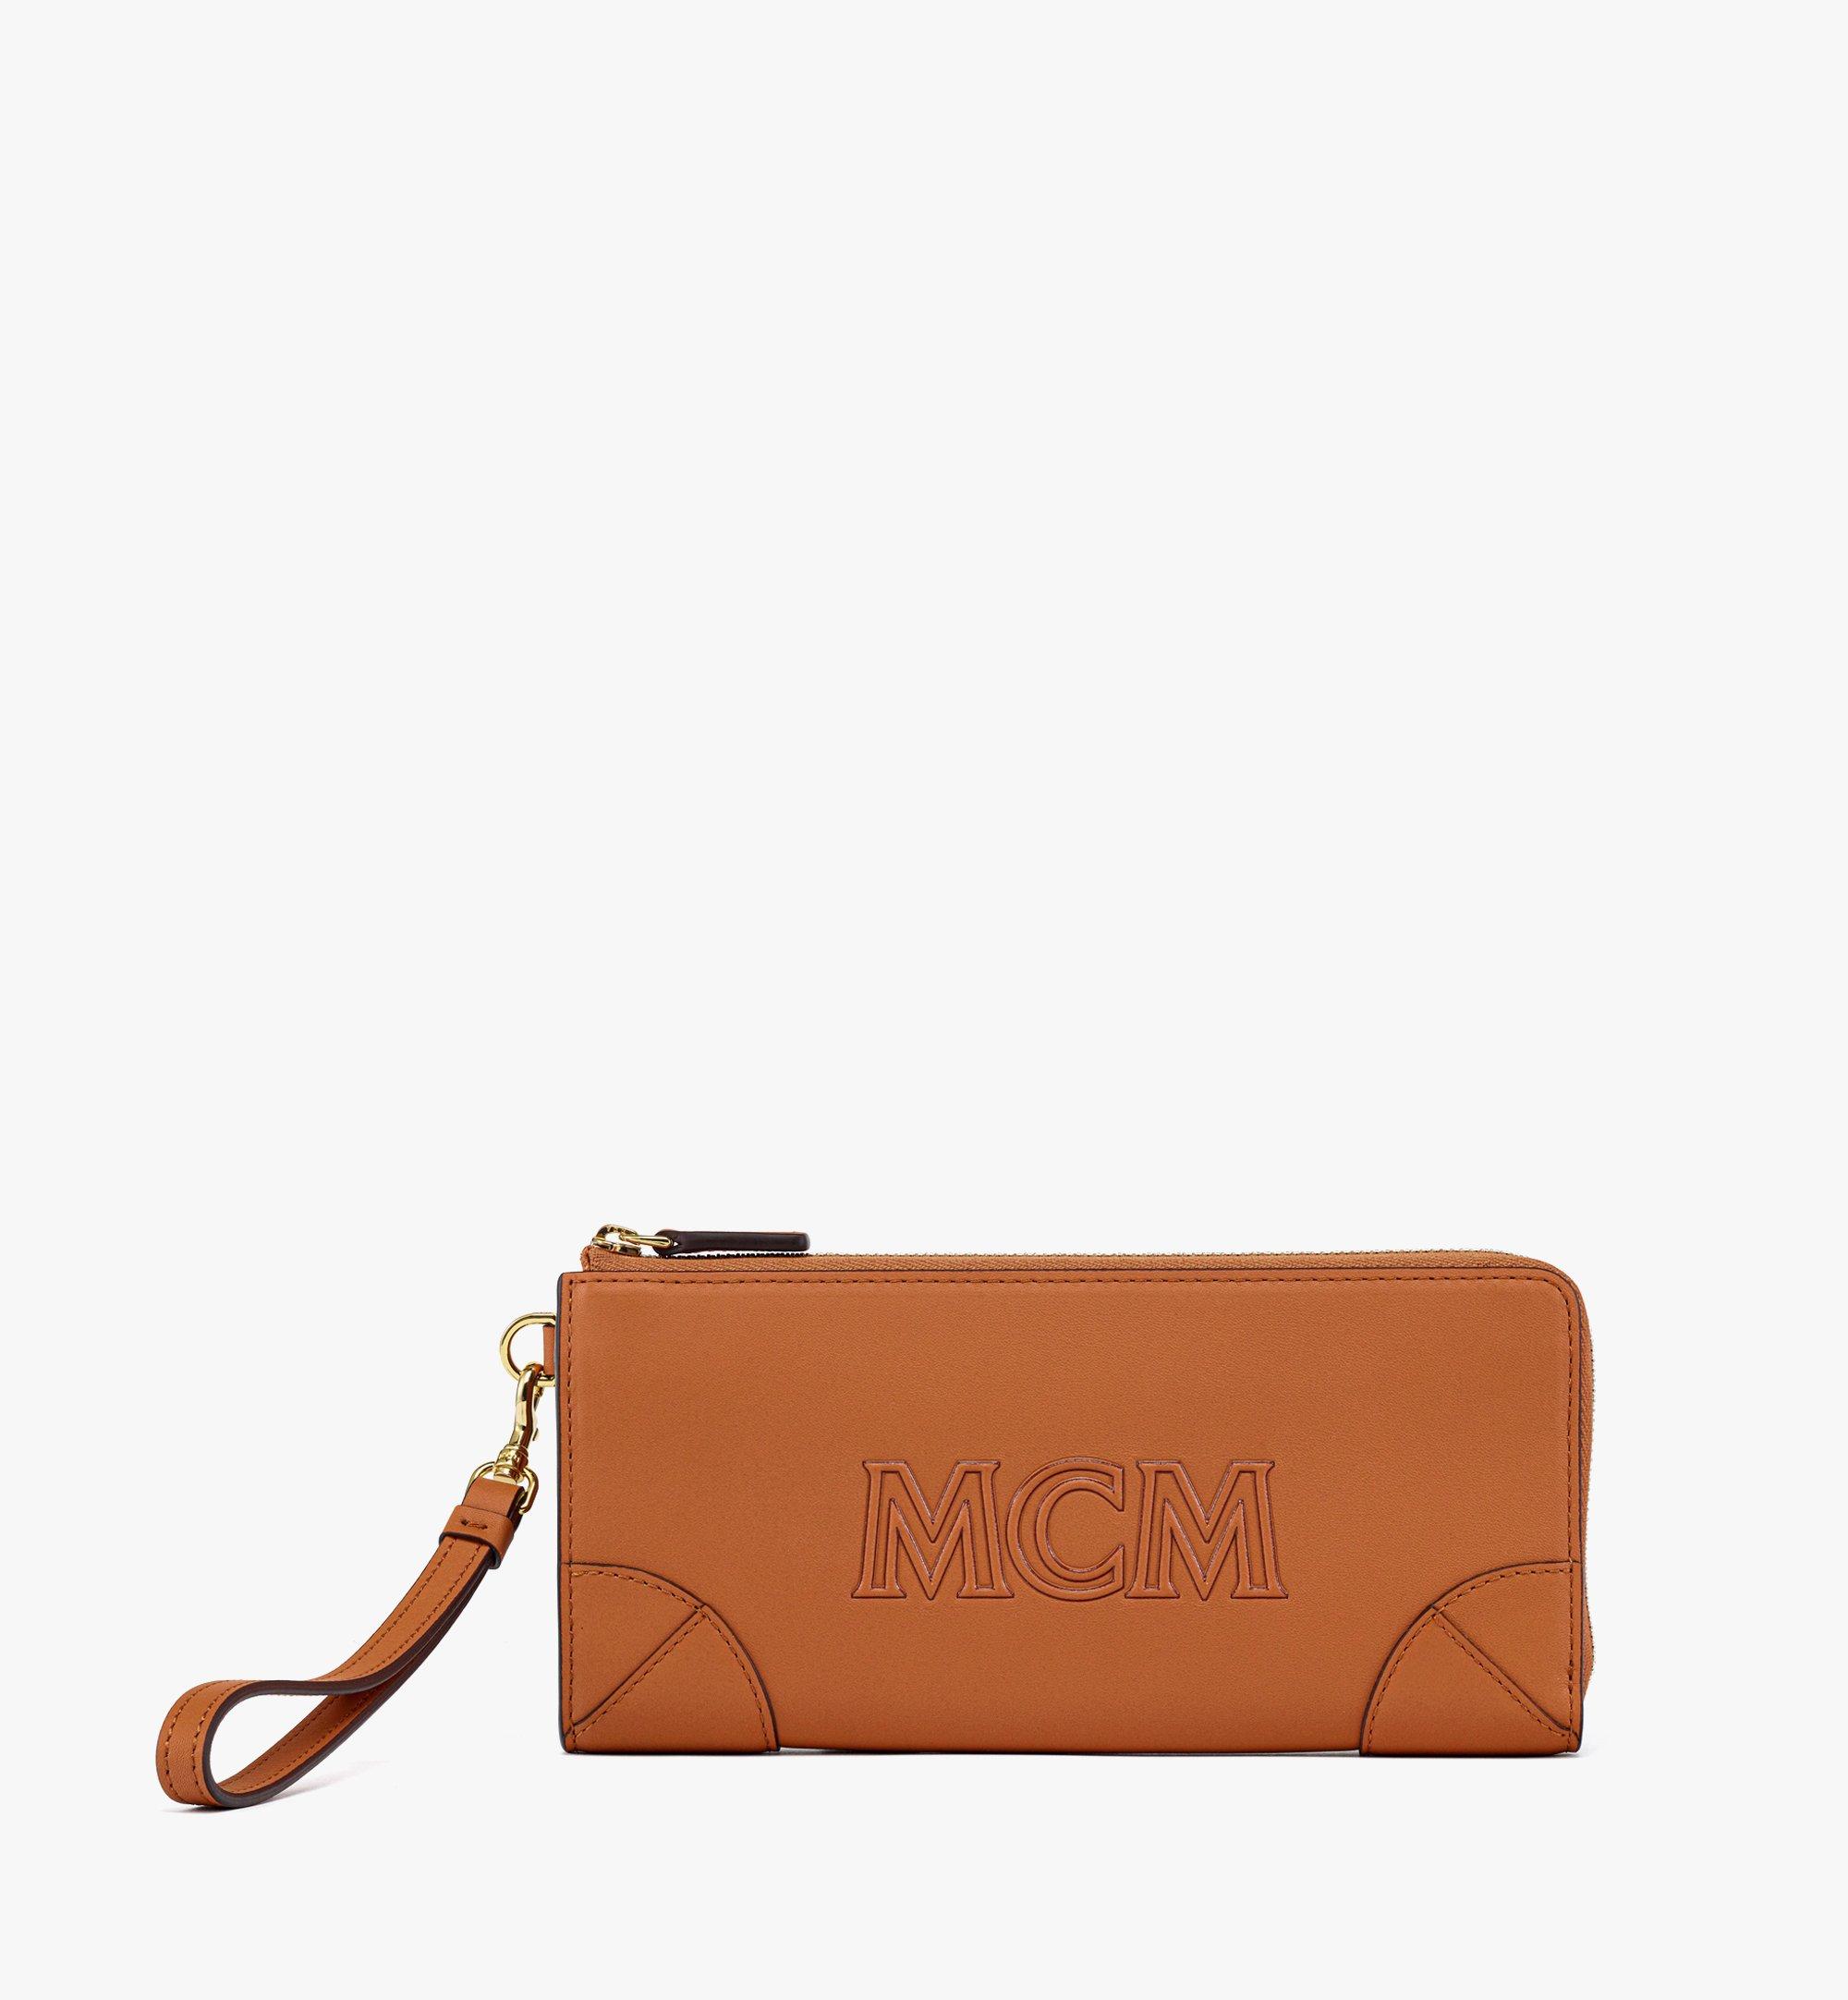 MCM Aren Zip Around Wallet in Spanish Calf Leather